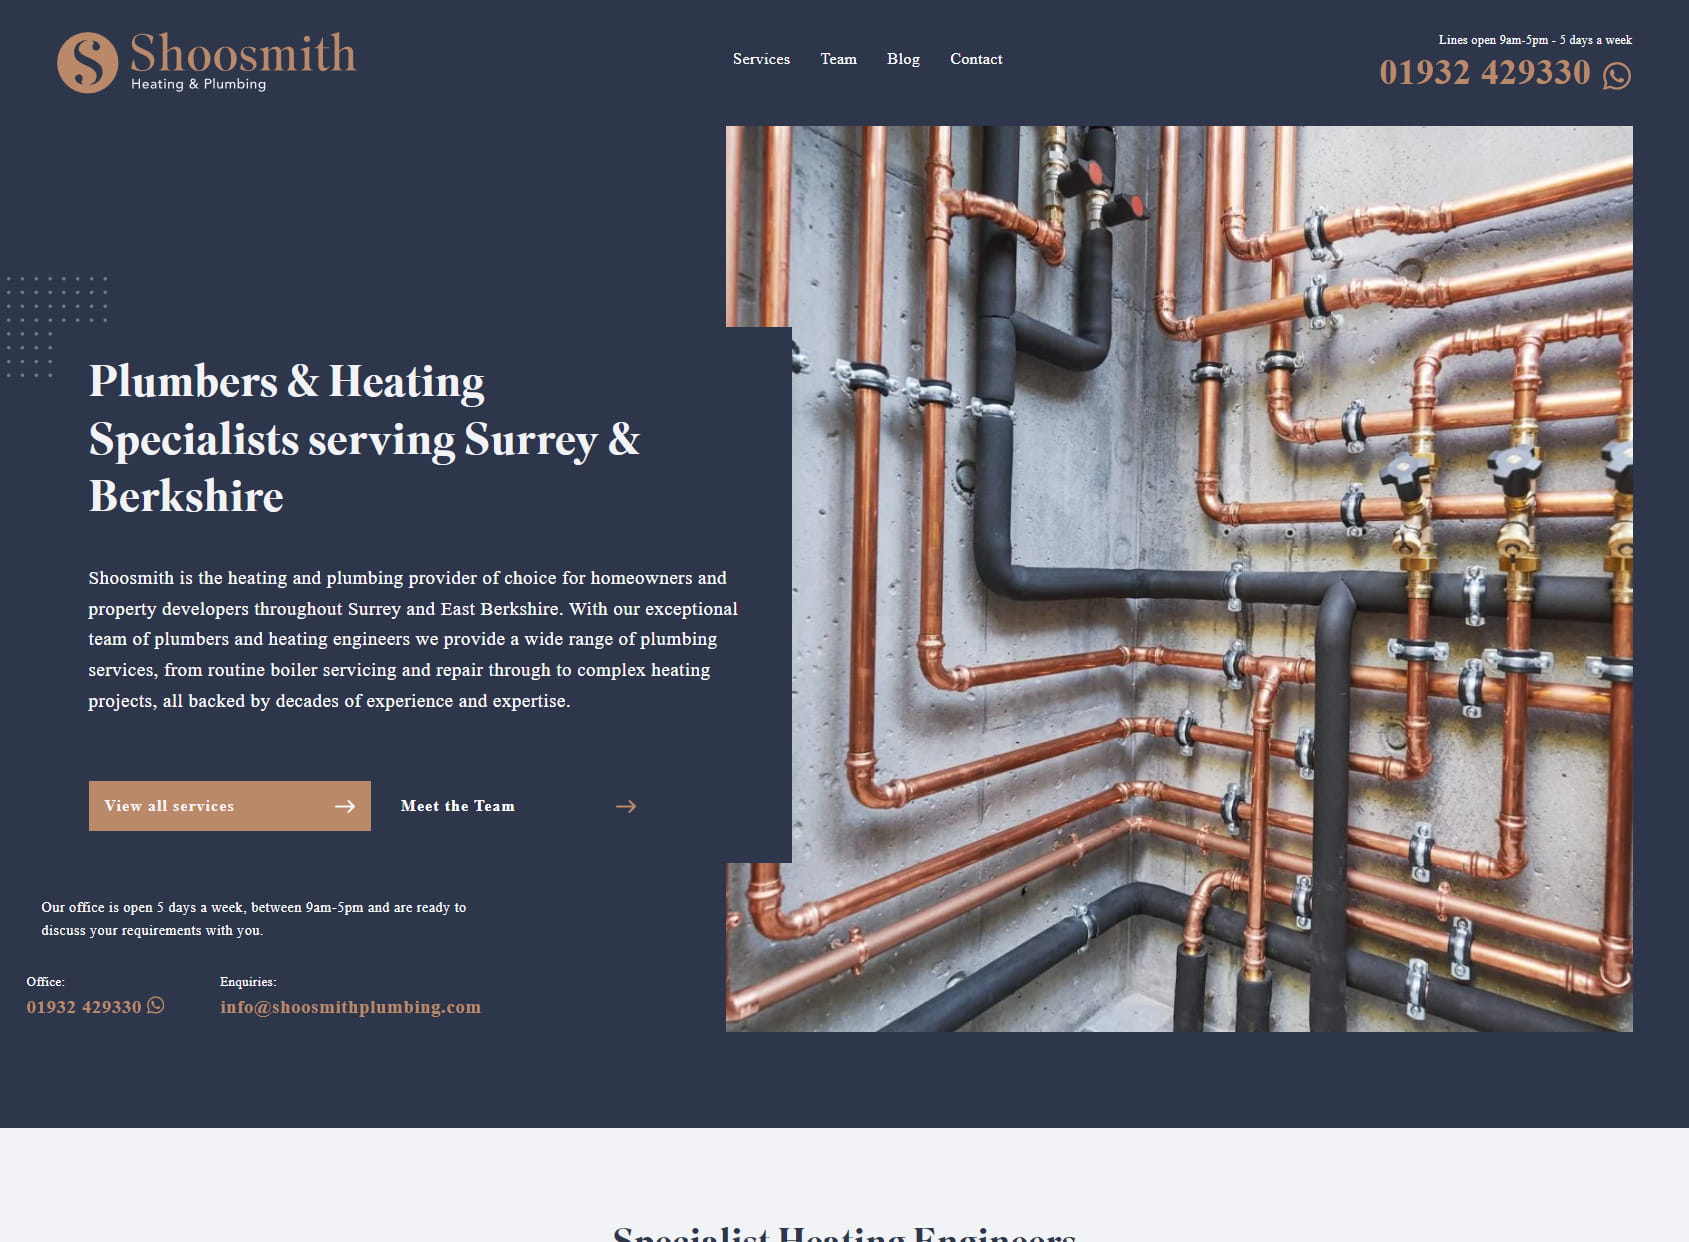 Shoosmith Heating & Plumbing